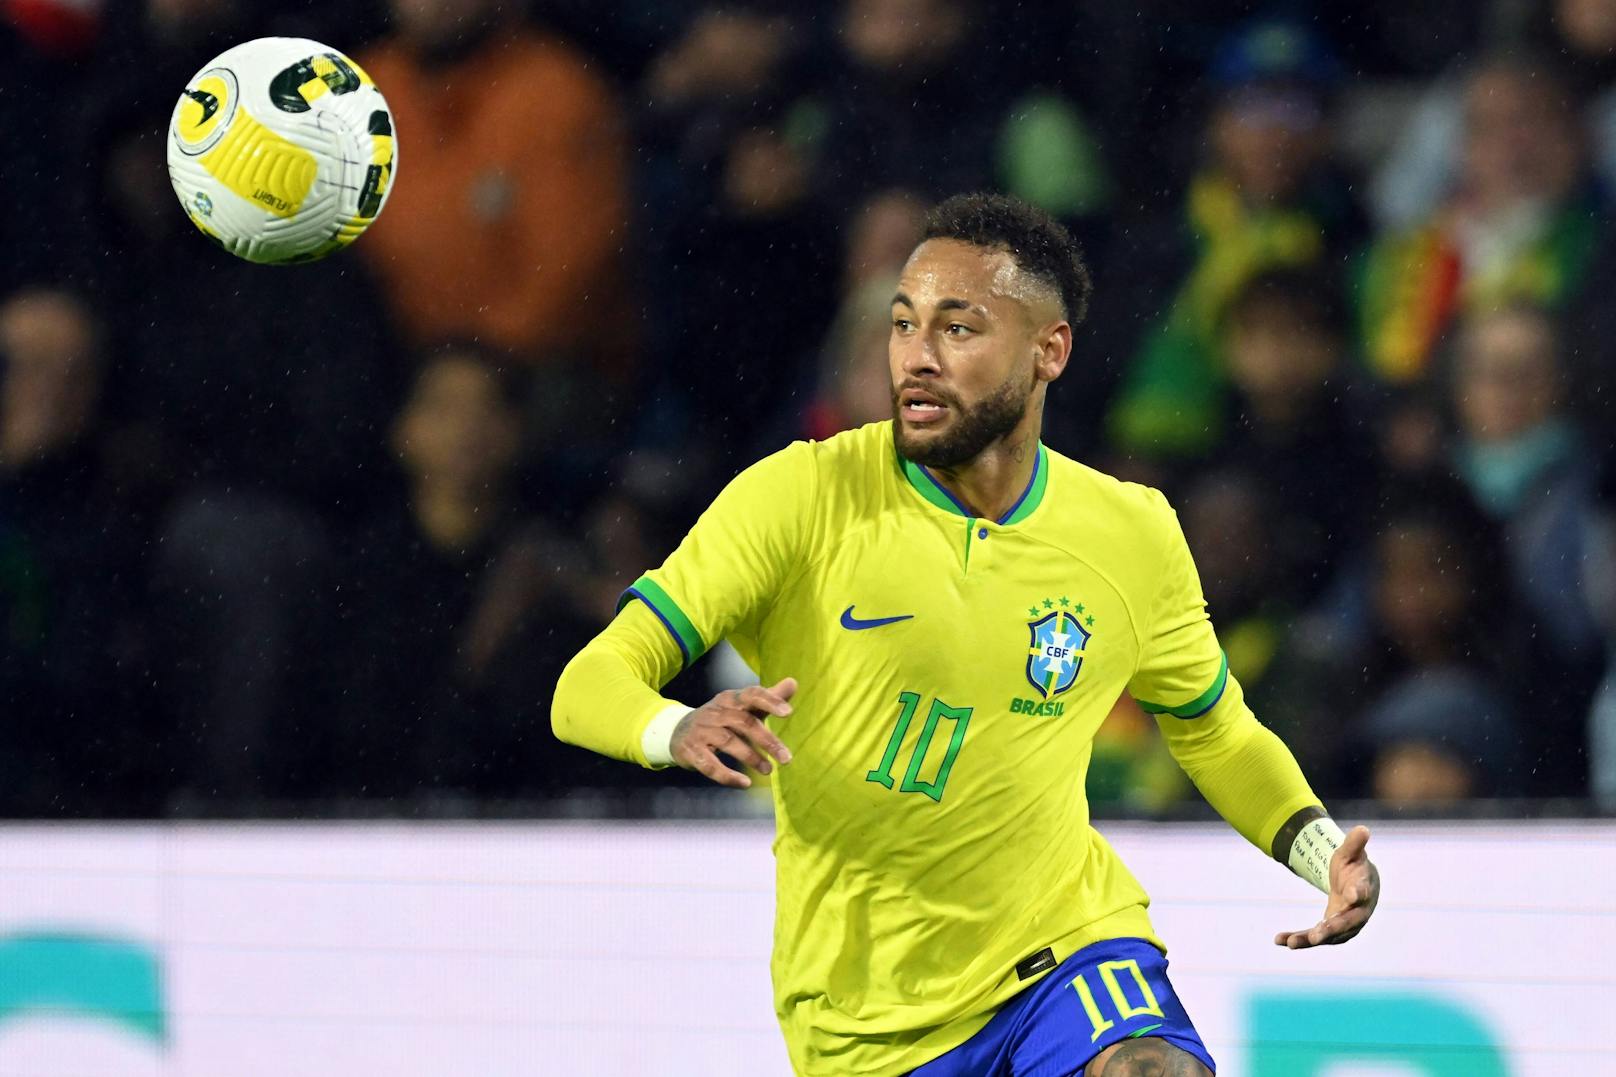 14 Siege, 3 Unentschieden – Brasilien pflügte in Südamerika dominant durch die WM-Quali. Die Selecao rund um Superstar Neymar präsentiert sich in Topform und wird von Experten und Konkurrenten ganz oben auf der Liste der Favoriten geführt.